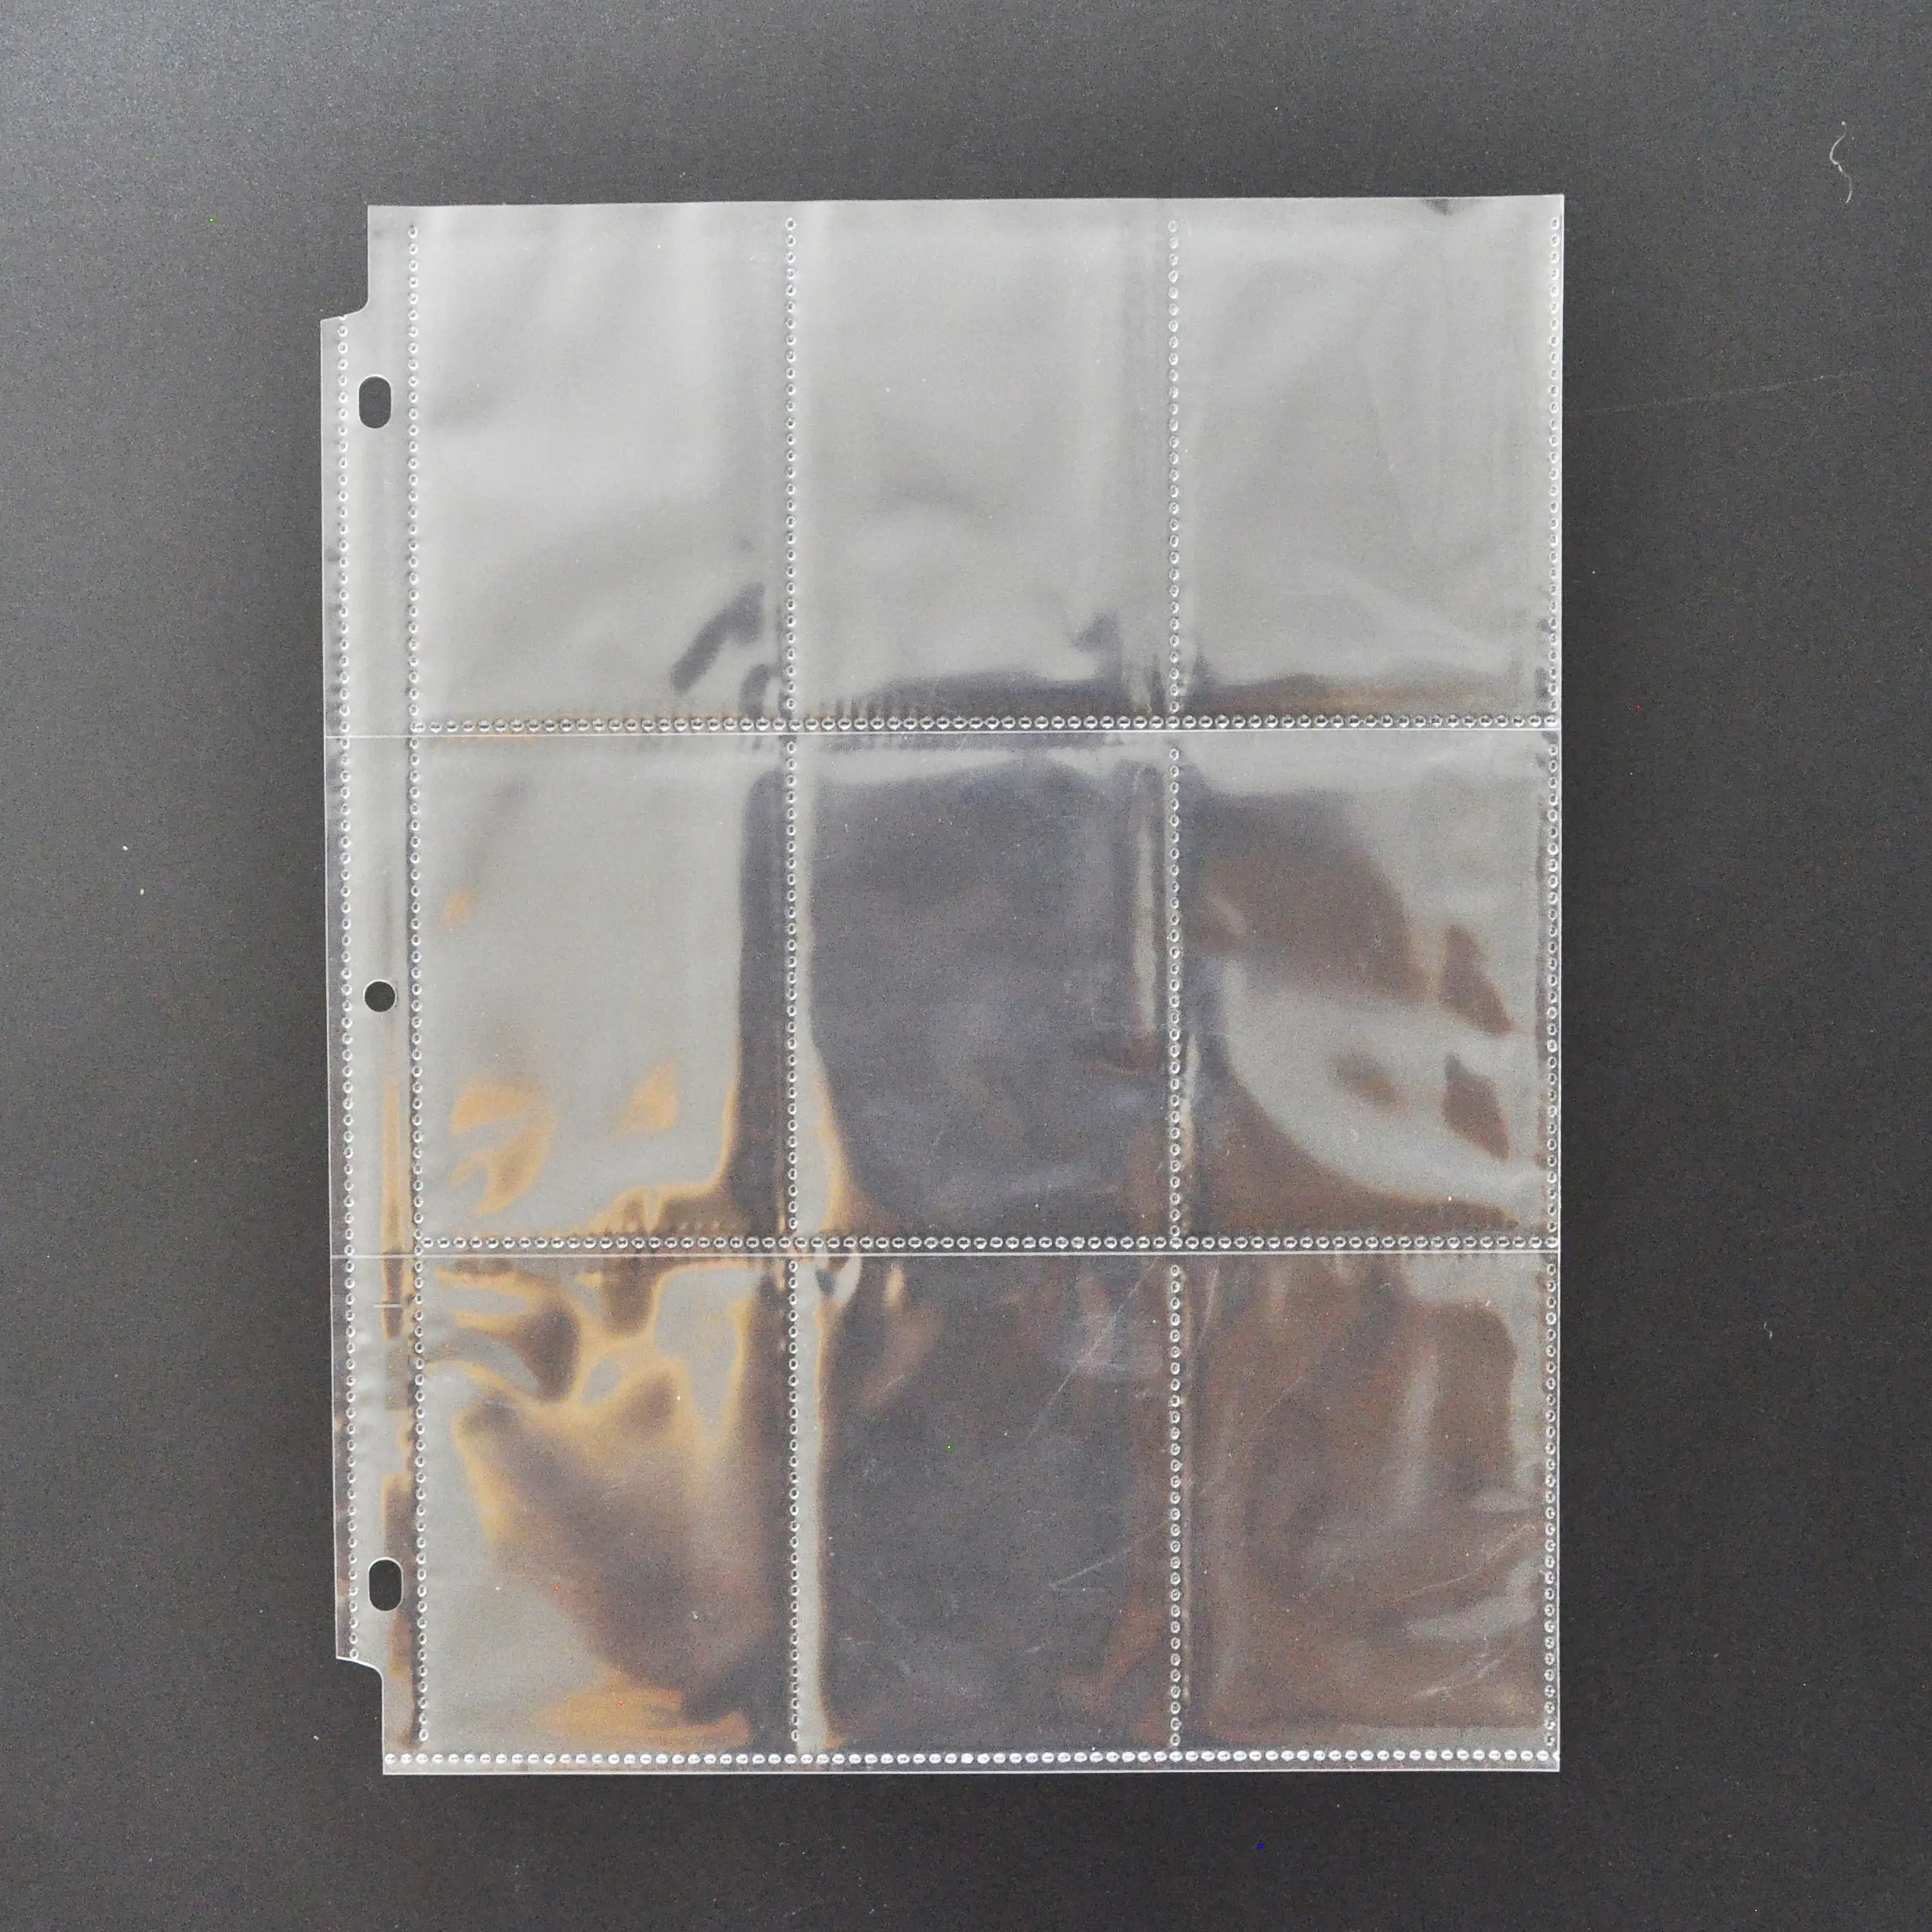 Tarjeta de juego de plástico transparente de 9 bolsillos con 3 agujeros Mangas de carpeta de tarjetas de intercambio de polietileno PP transparente con 9 bolsillos interiores